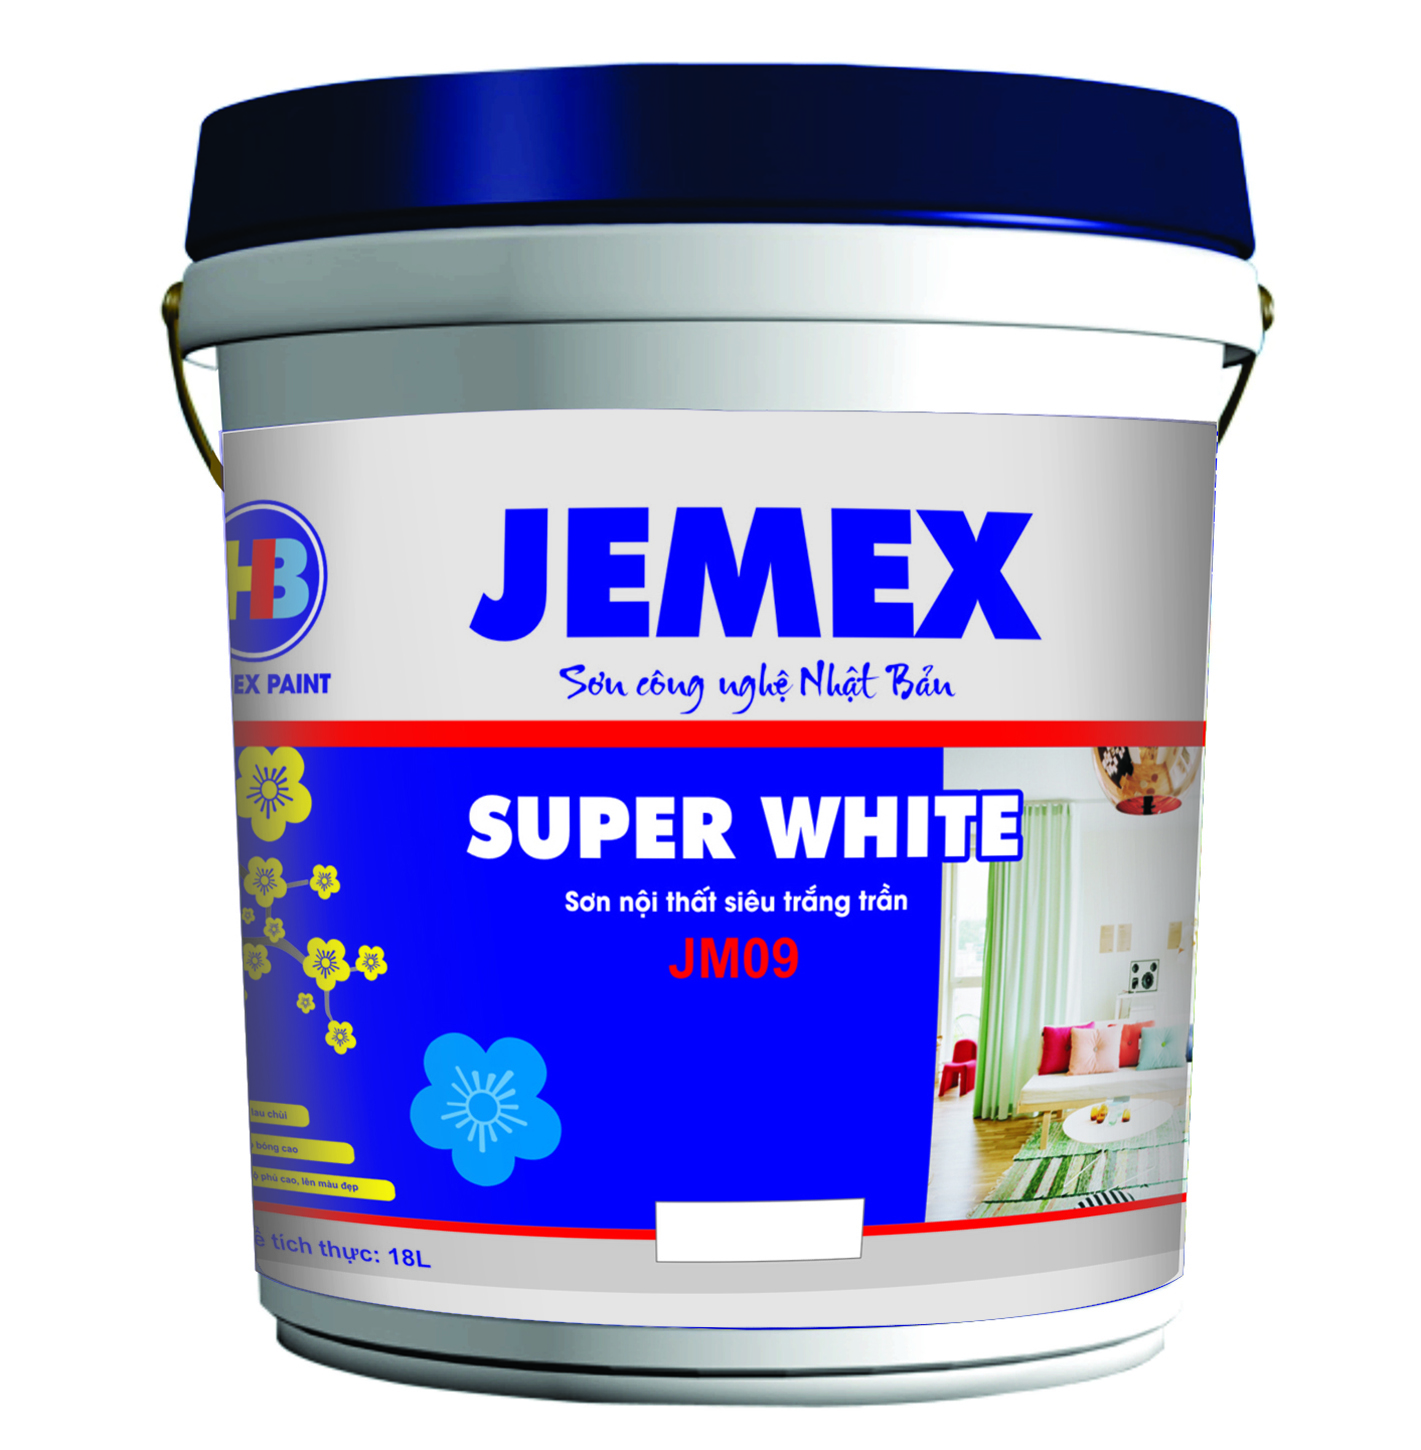 Sơn nội thất siêu trắng trần Super White JM09